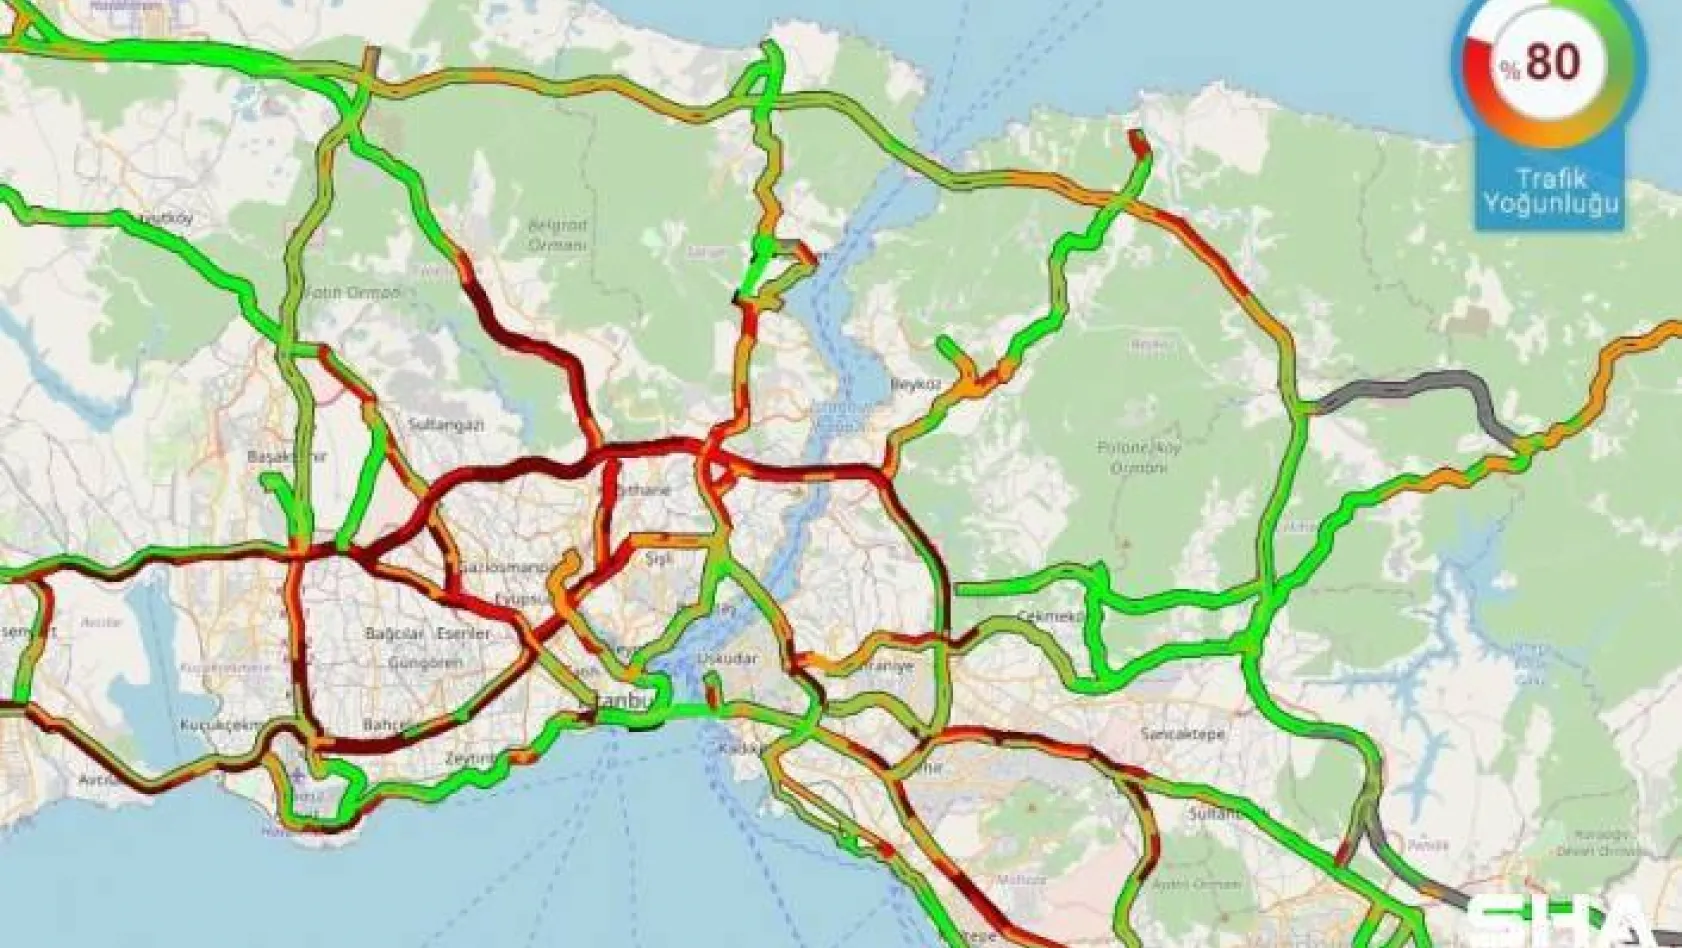 İstanbul'da kar trafiği, yoğunluk yüzde 80'e ulaştı